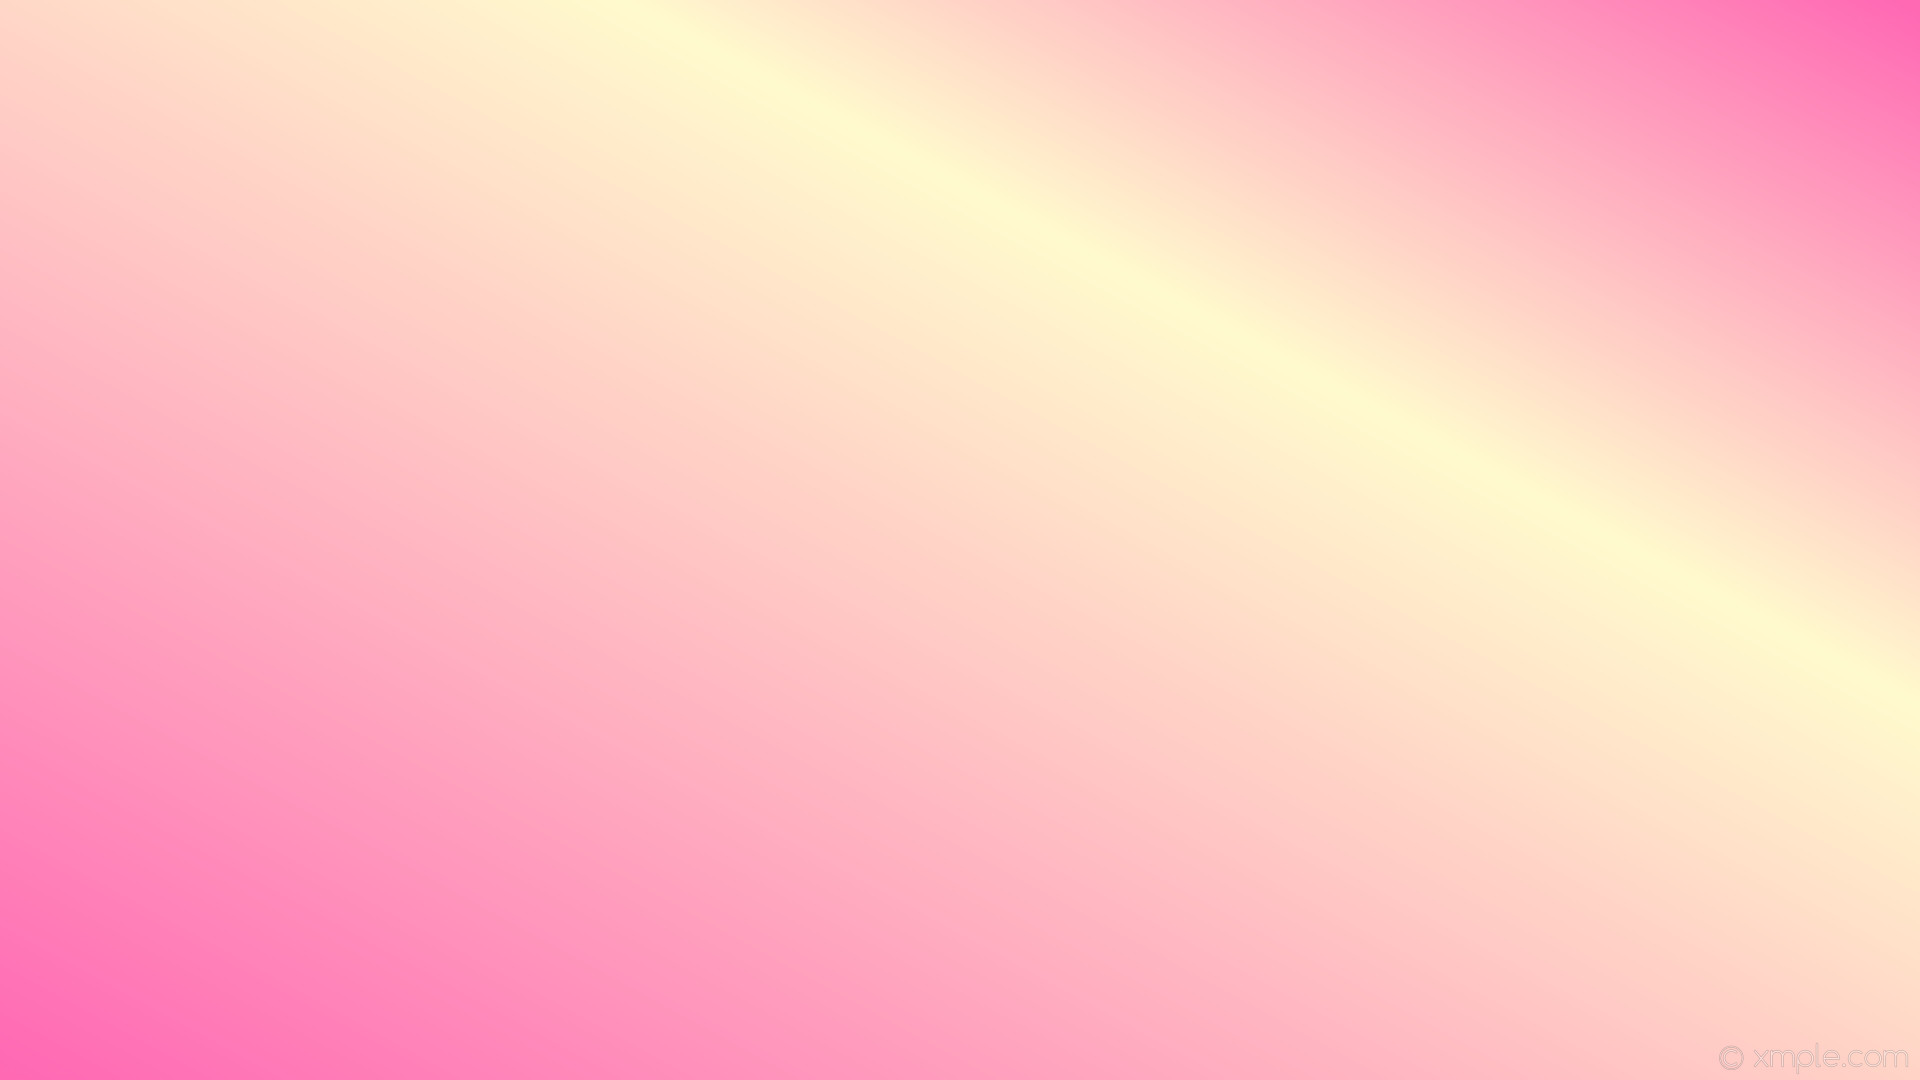 1920x1080 wallpaper gradient linear highlight pink yellow hot pink lemon chiffon  #ff69b4 #fffacd 210Â°